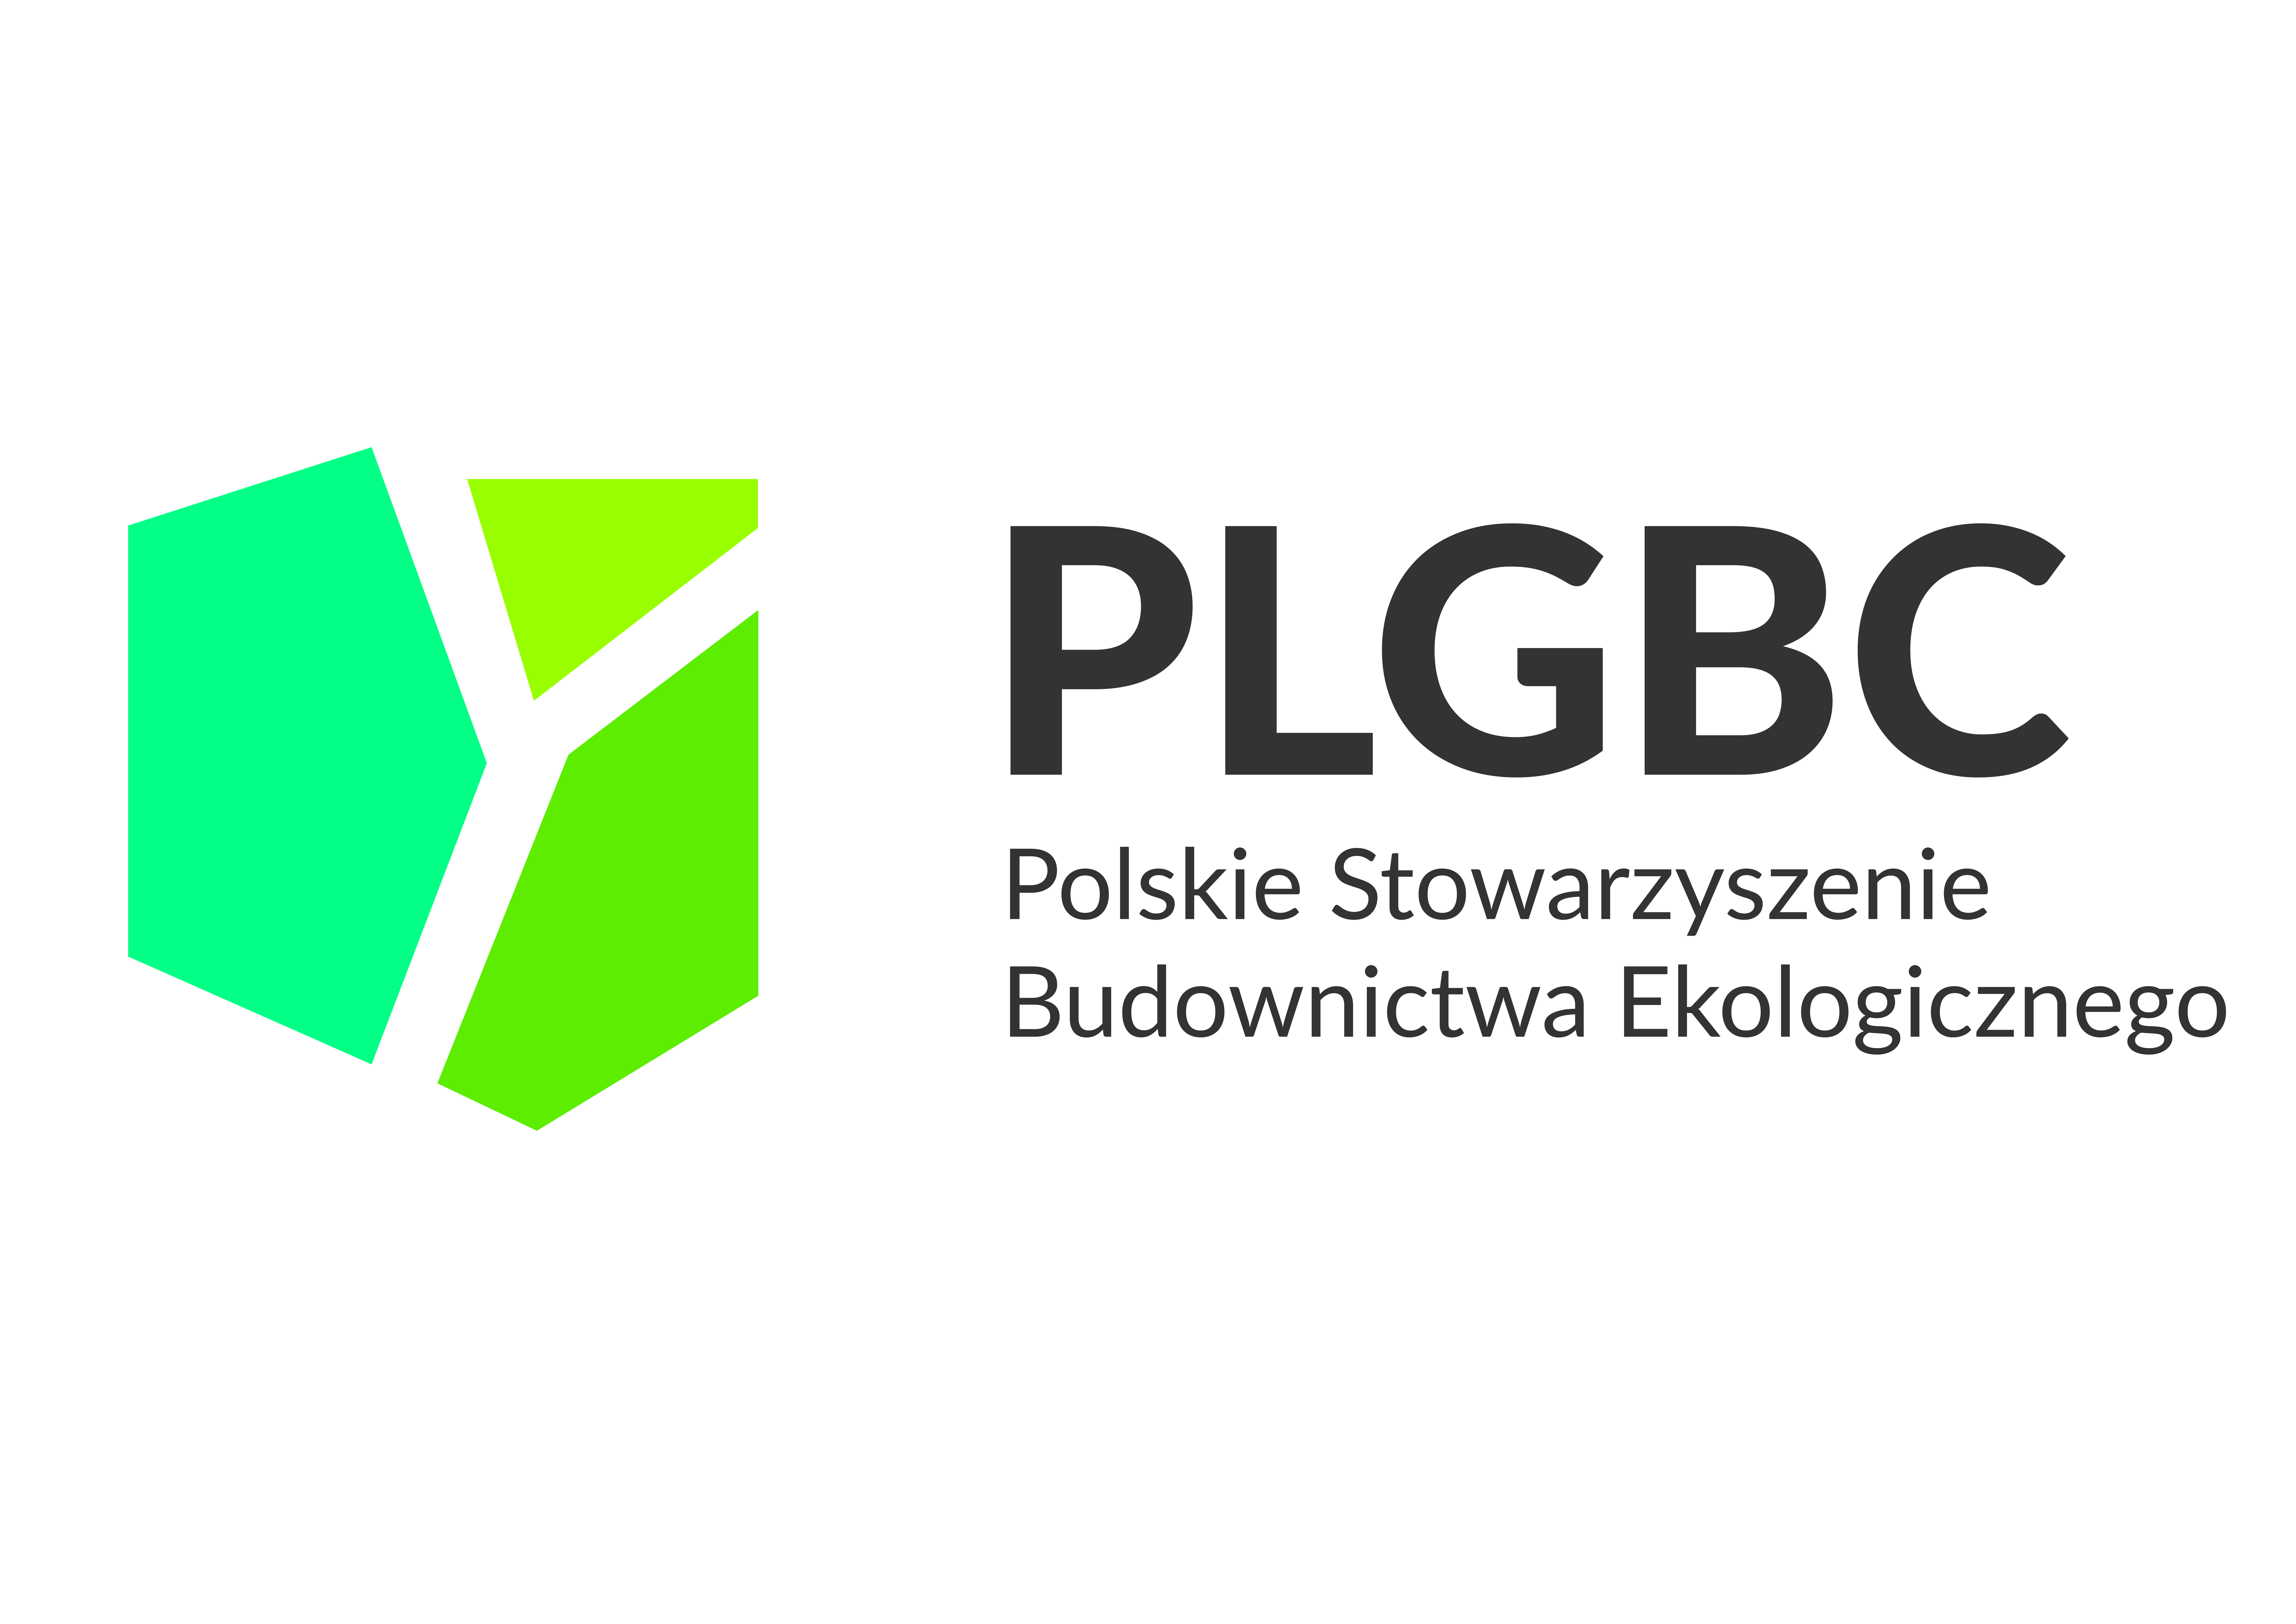 PLGBC